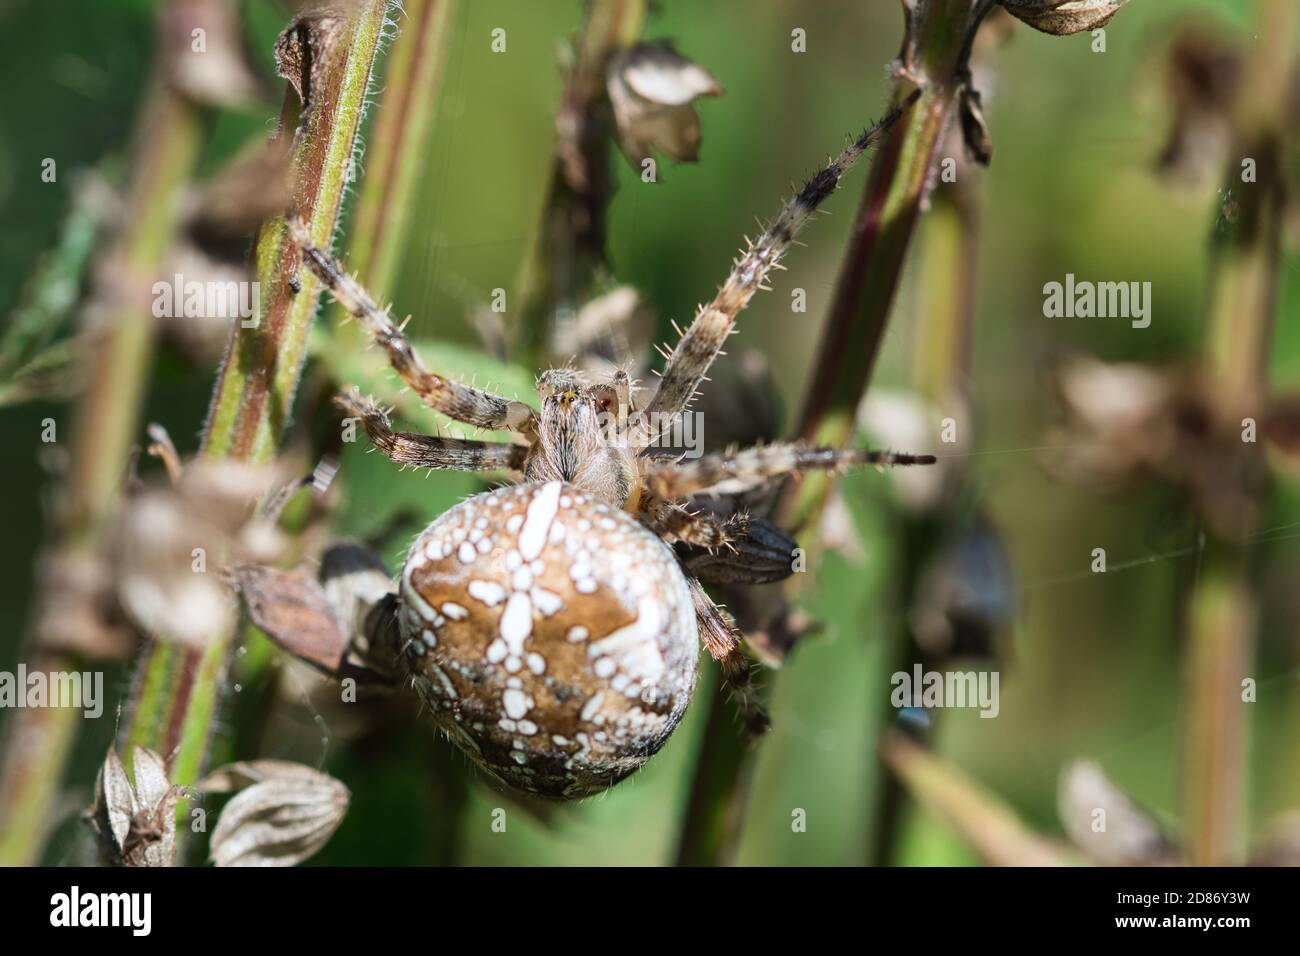 Tessitore di orb coronato, motivo macro di ragno di croce di giardino, vista dall'alto, insetto nel fotoricettore che aspetta una preda, dettagliata, testurizzata con sfondo sfocato Foto Stock